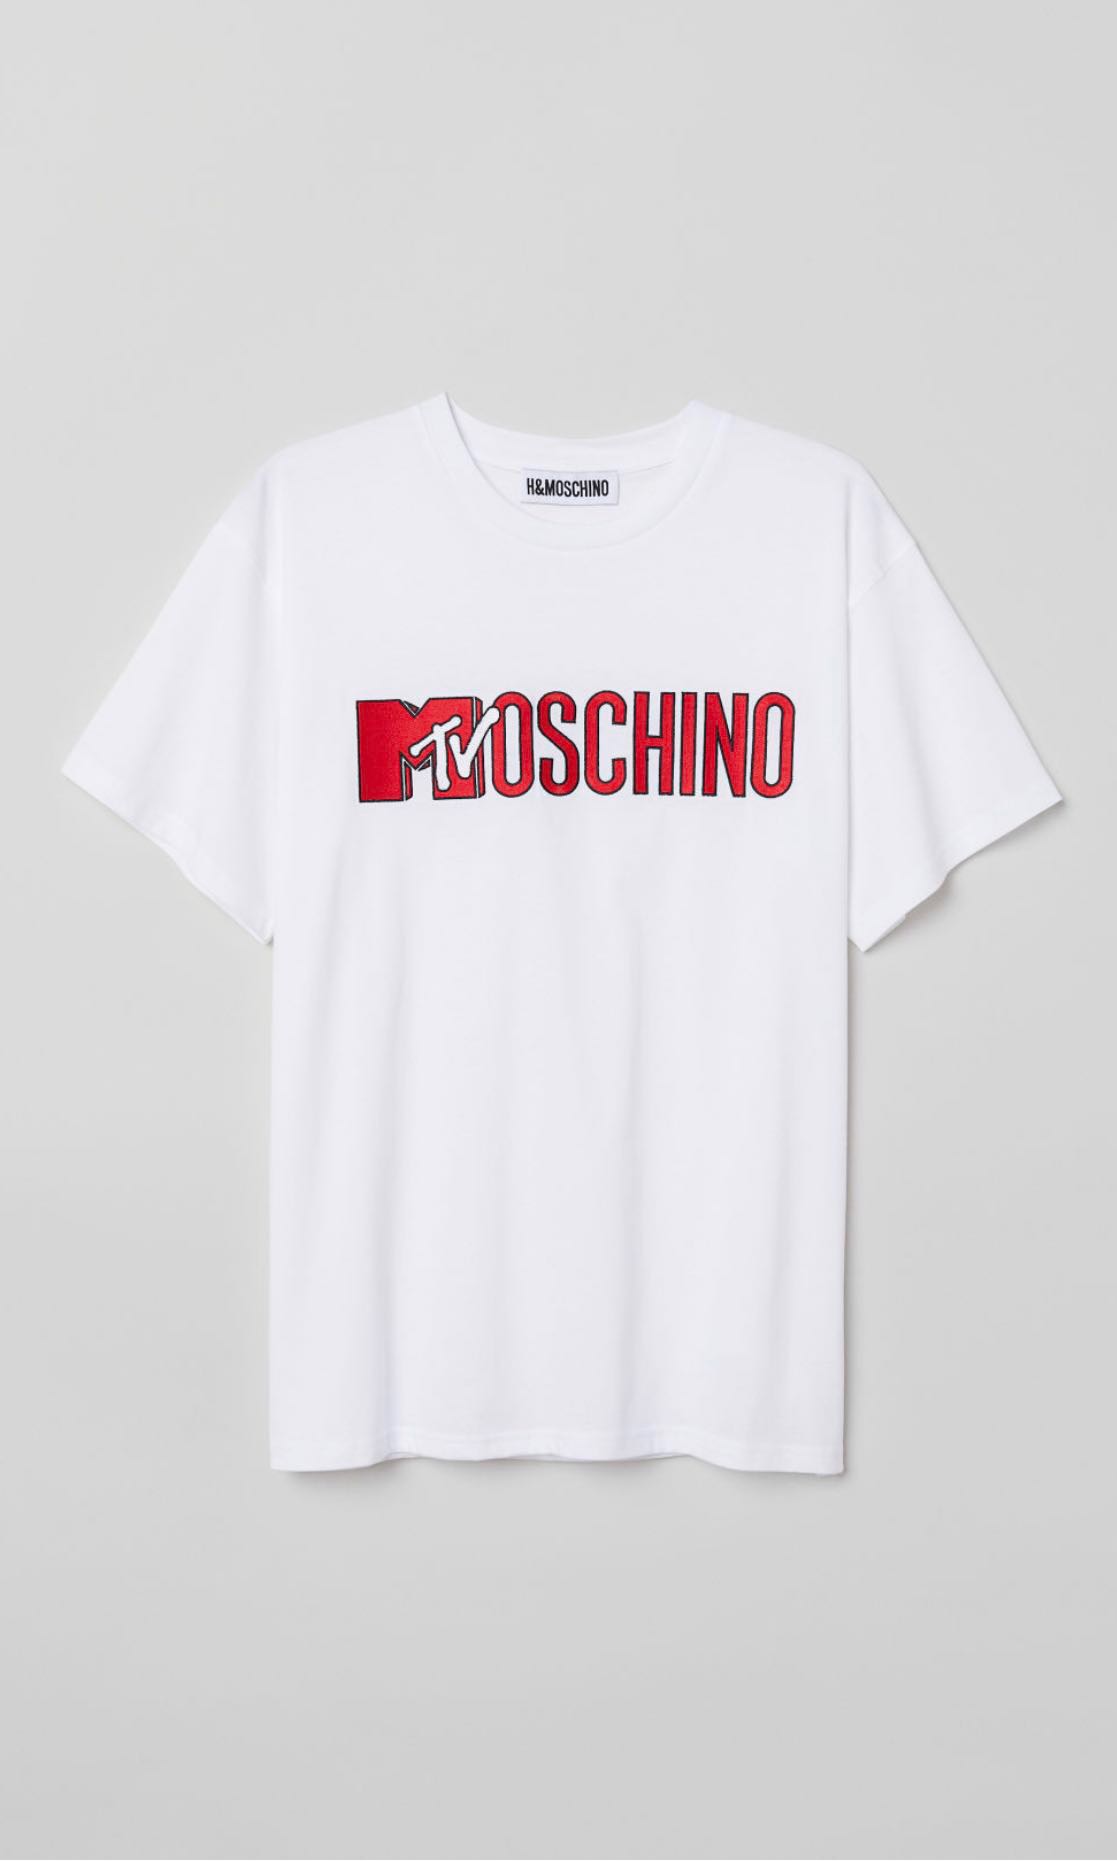 moschino h&m shirt